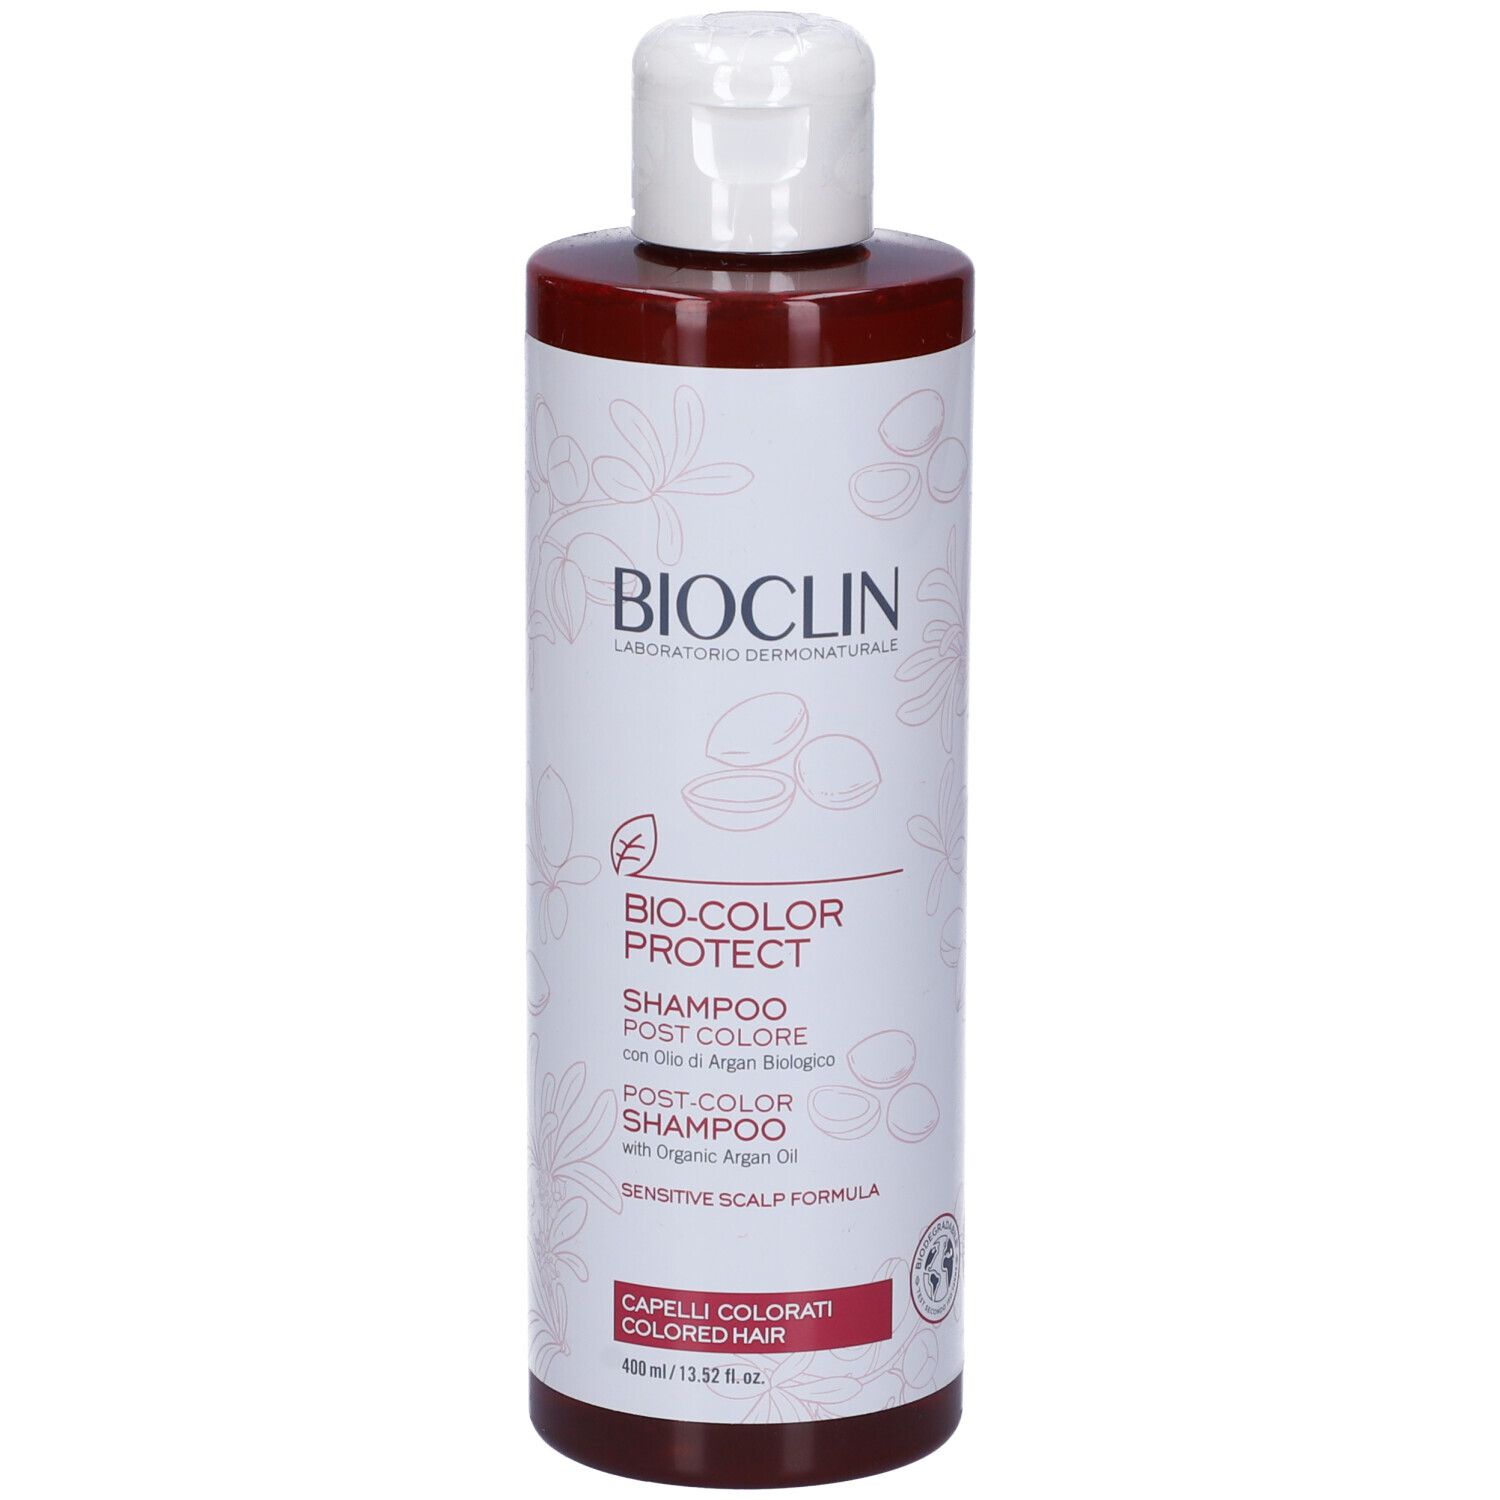 Image of BIOCLIN Bio-Color Protect Shampoo Post Colore